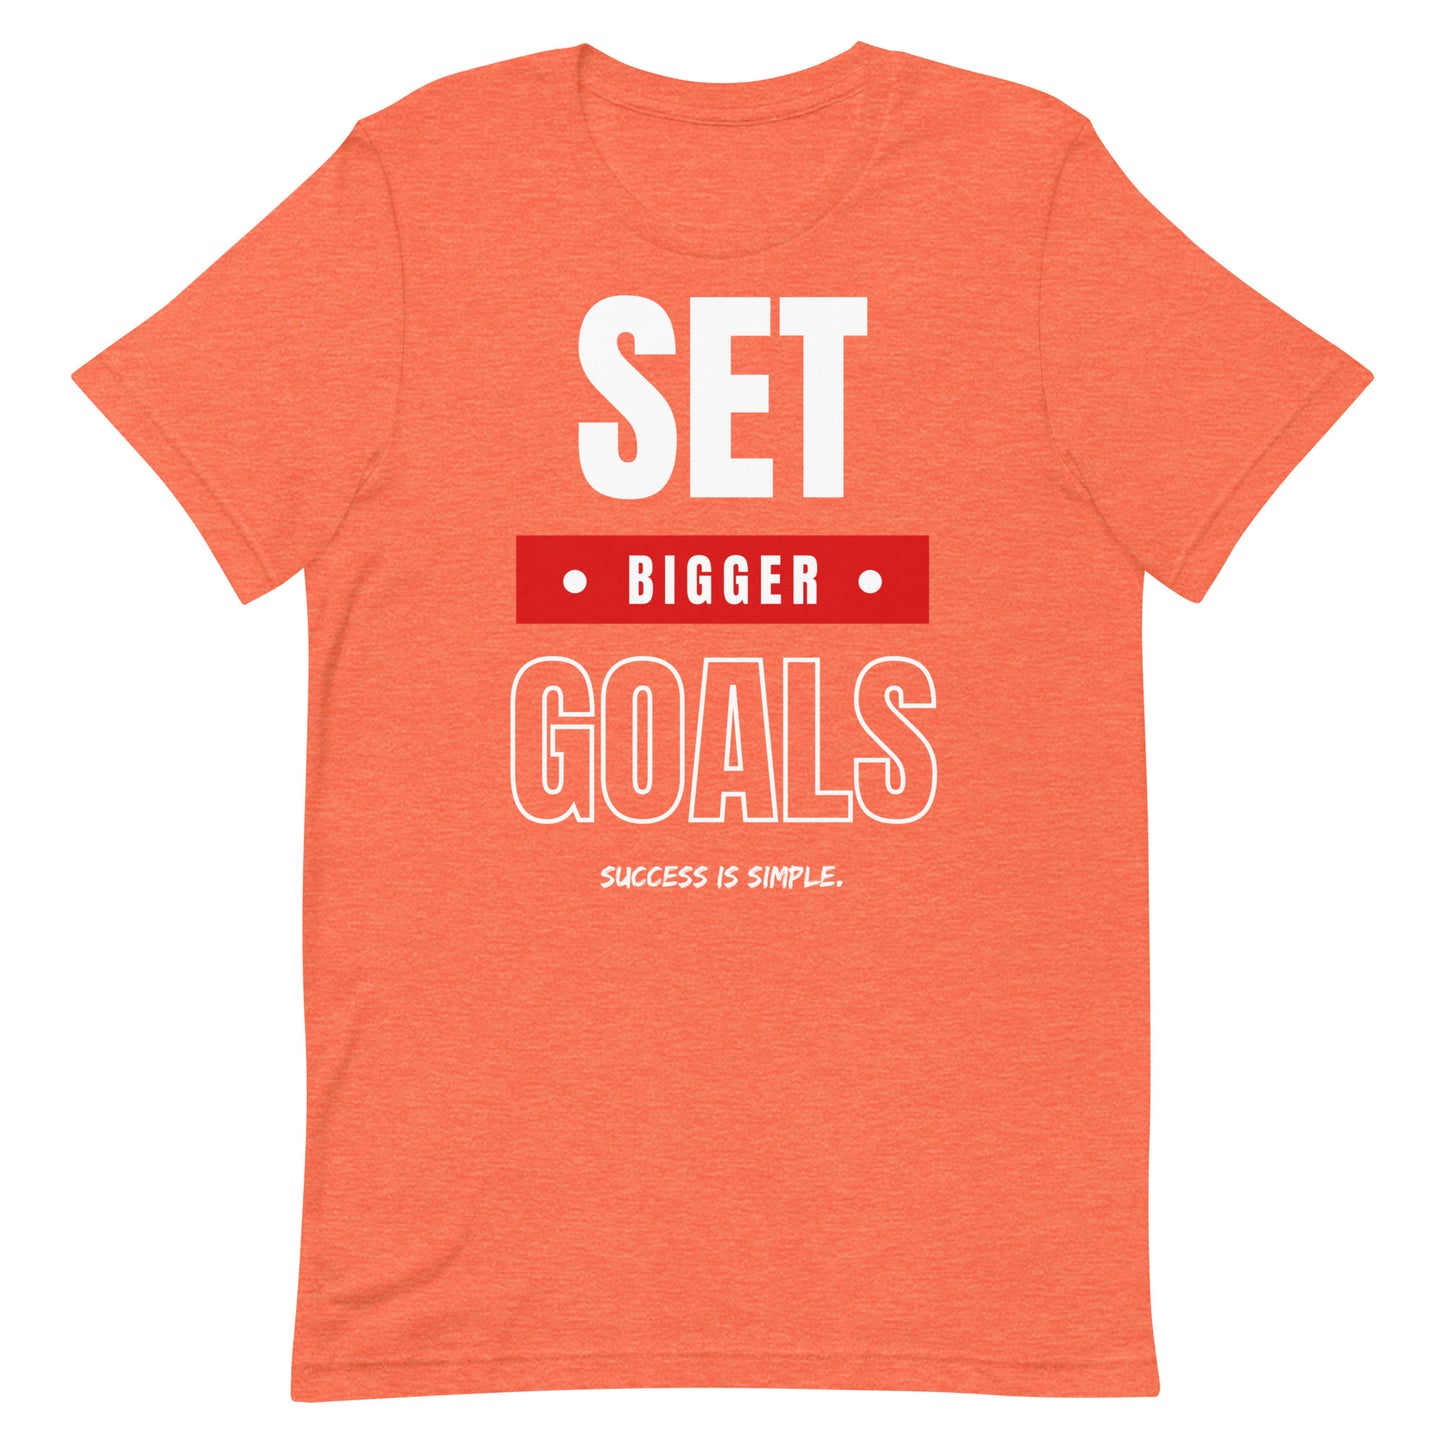 Set Bigger Goals T-shirt